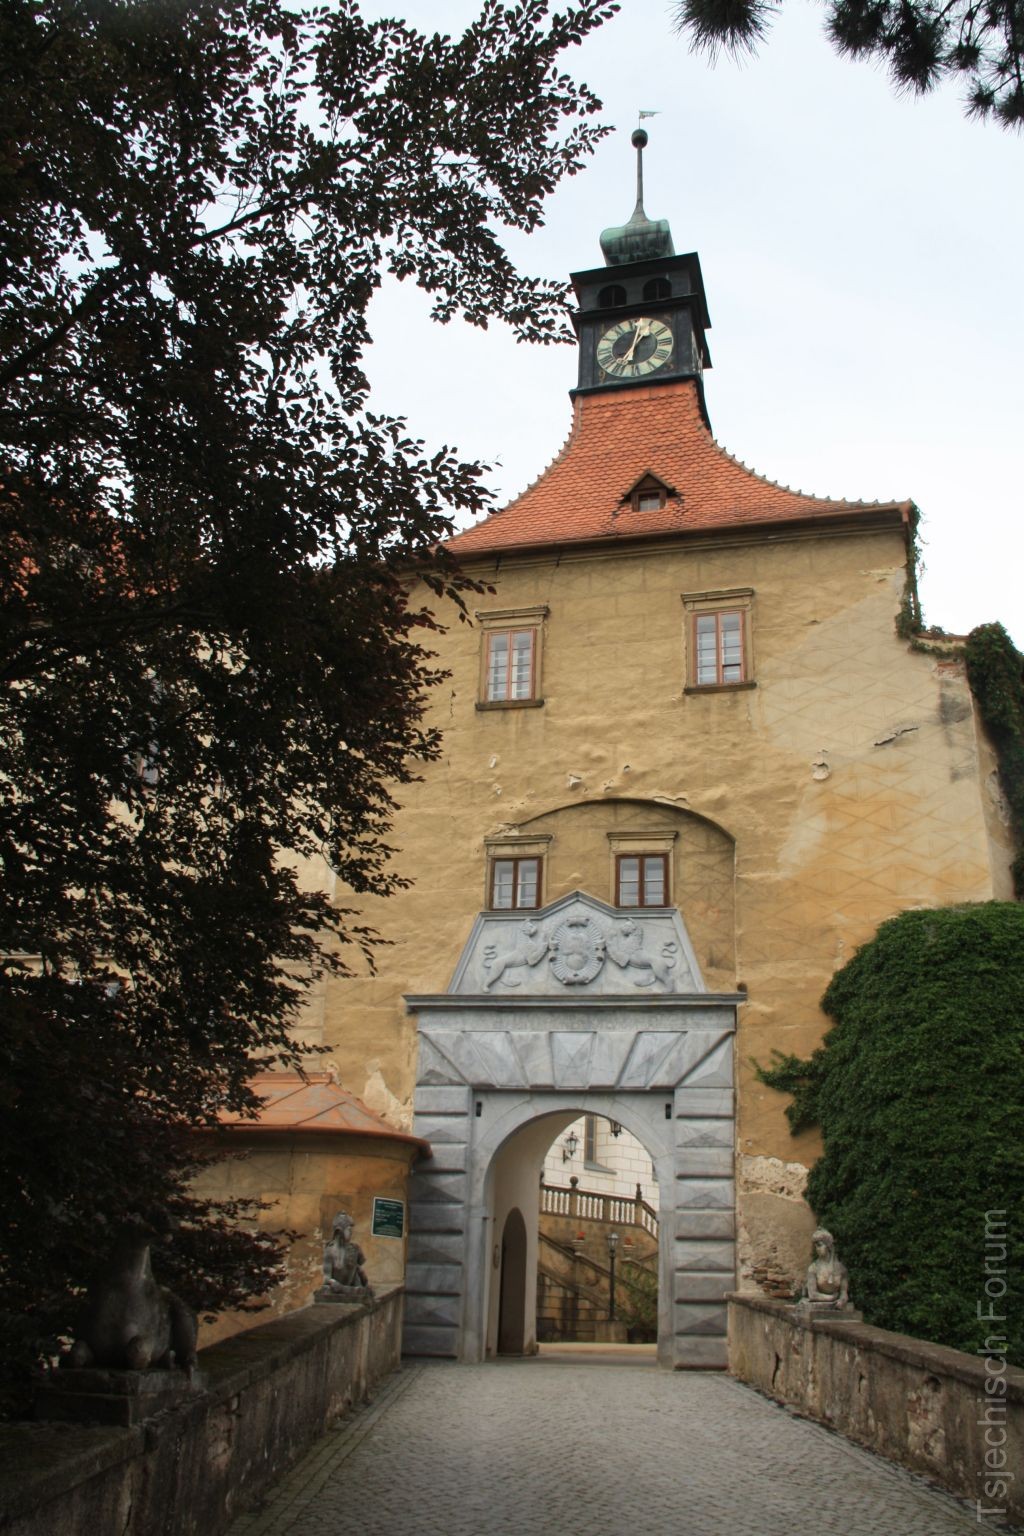 Státní zámek Náměšť nad Oslavou